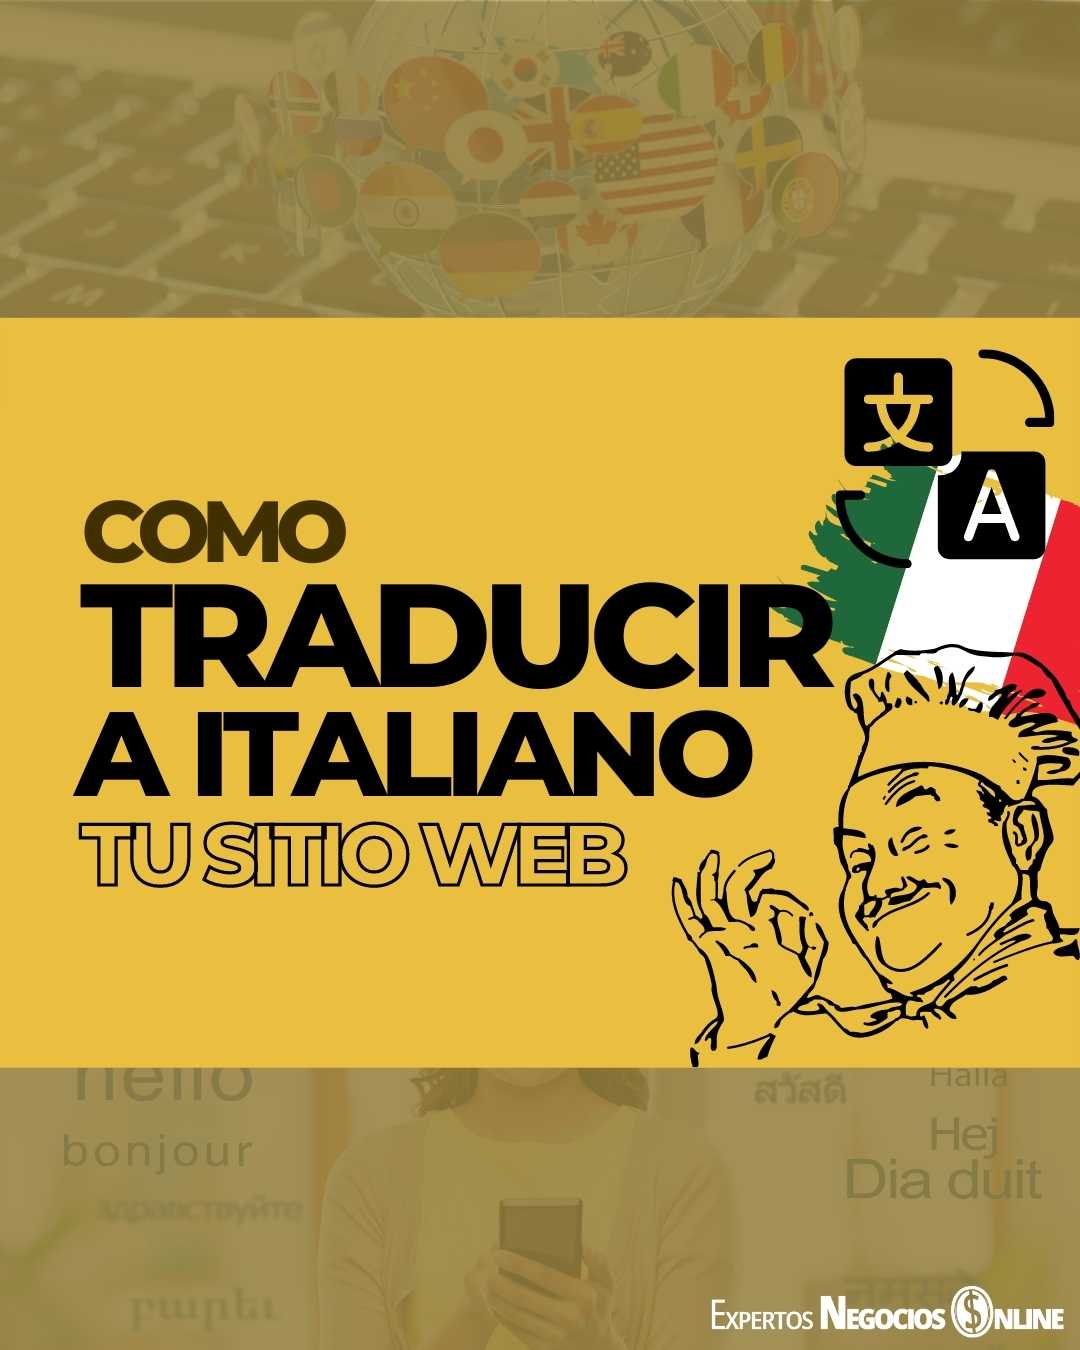 Traducciones al Italiano de Calidad para tu Web